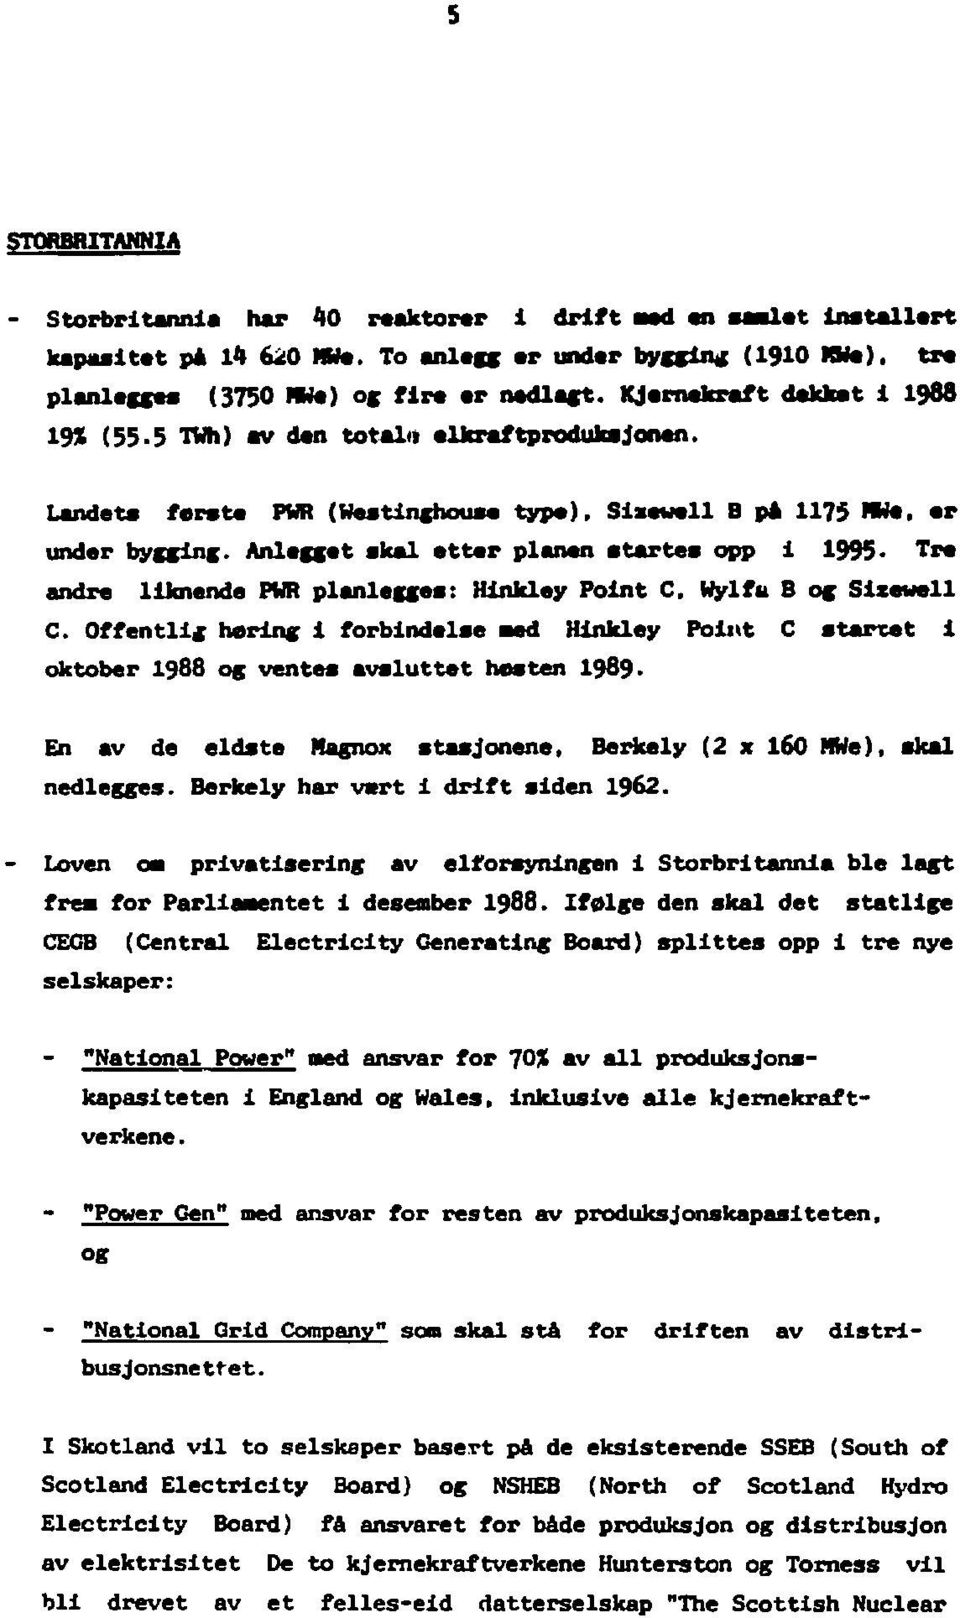 Anlegget skal etter planen starte» opp 1 1995- Tre andre llknende PWR planlegge»: Hlnkley Point C. Wylfu B og Siiewell C.